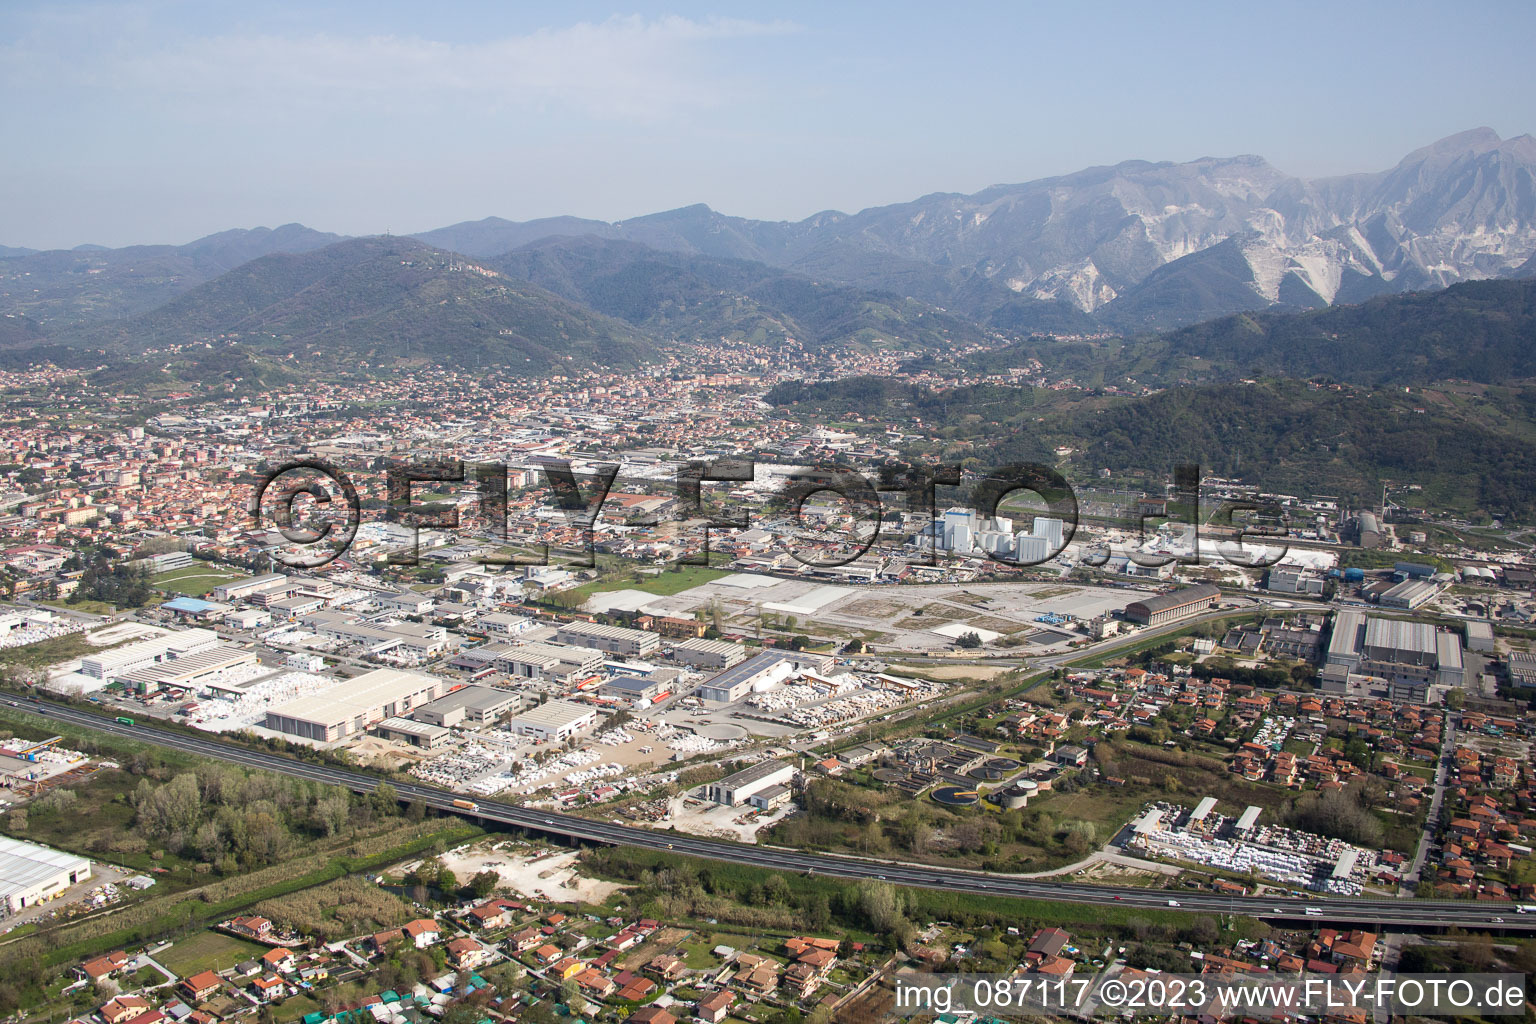 Luftbild von Avenza im Bundesland Toscana, Italien